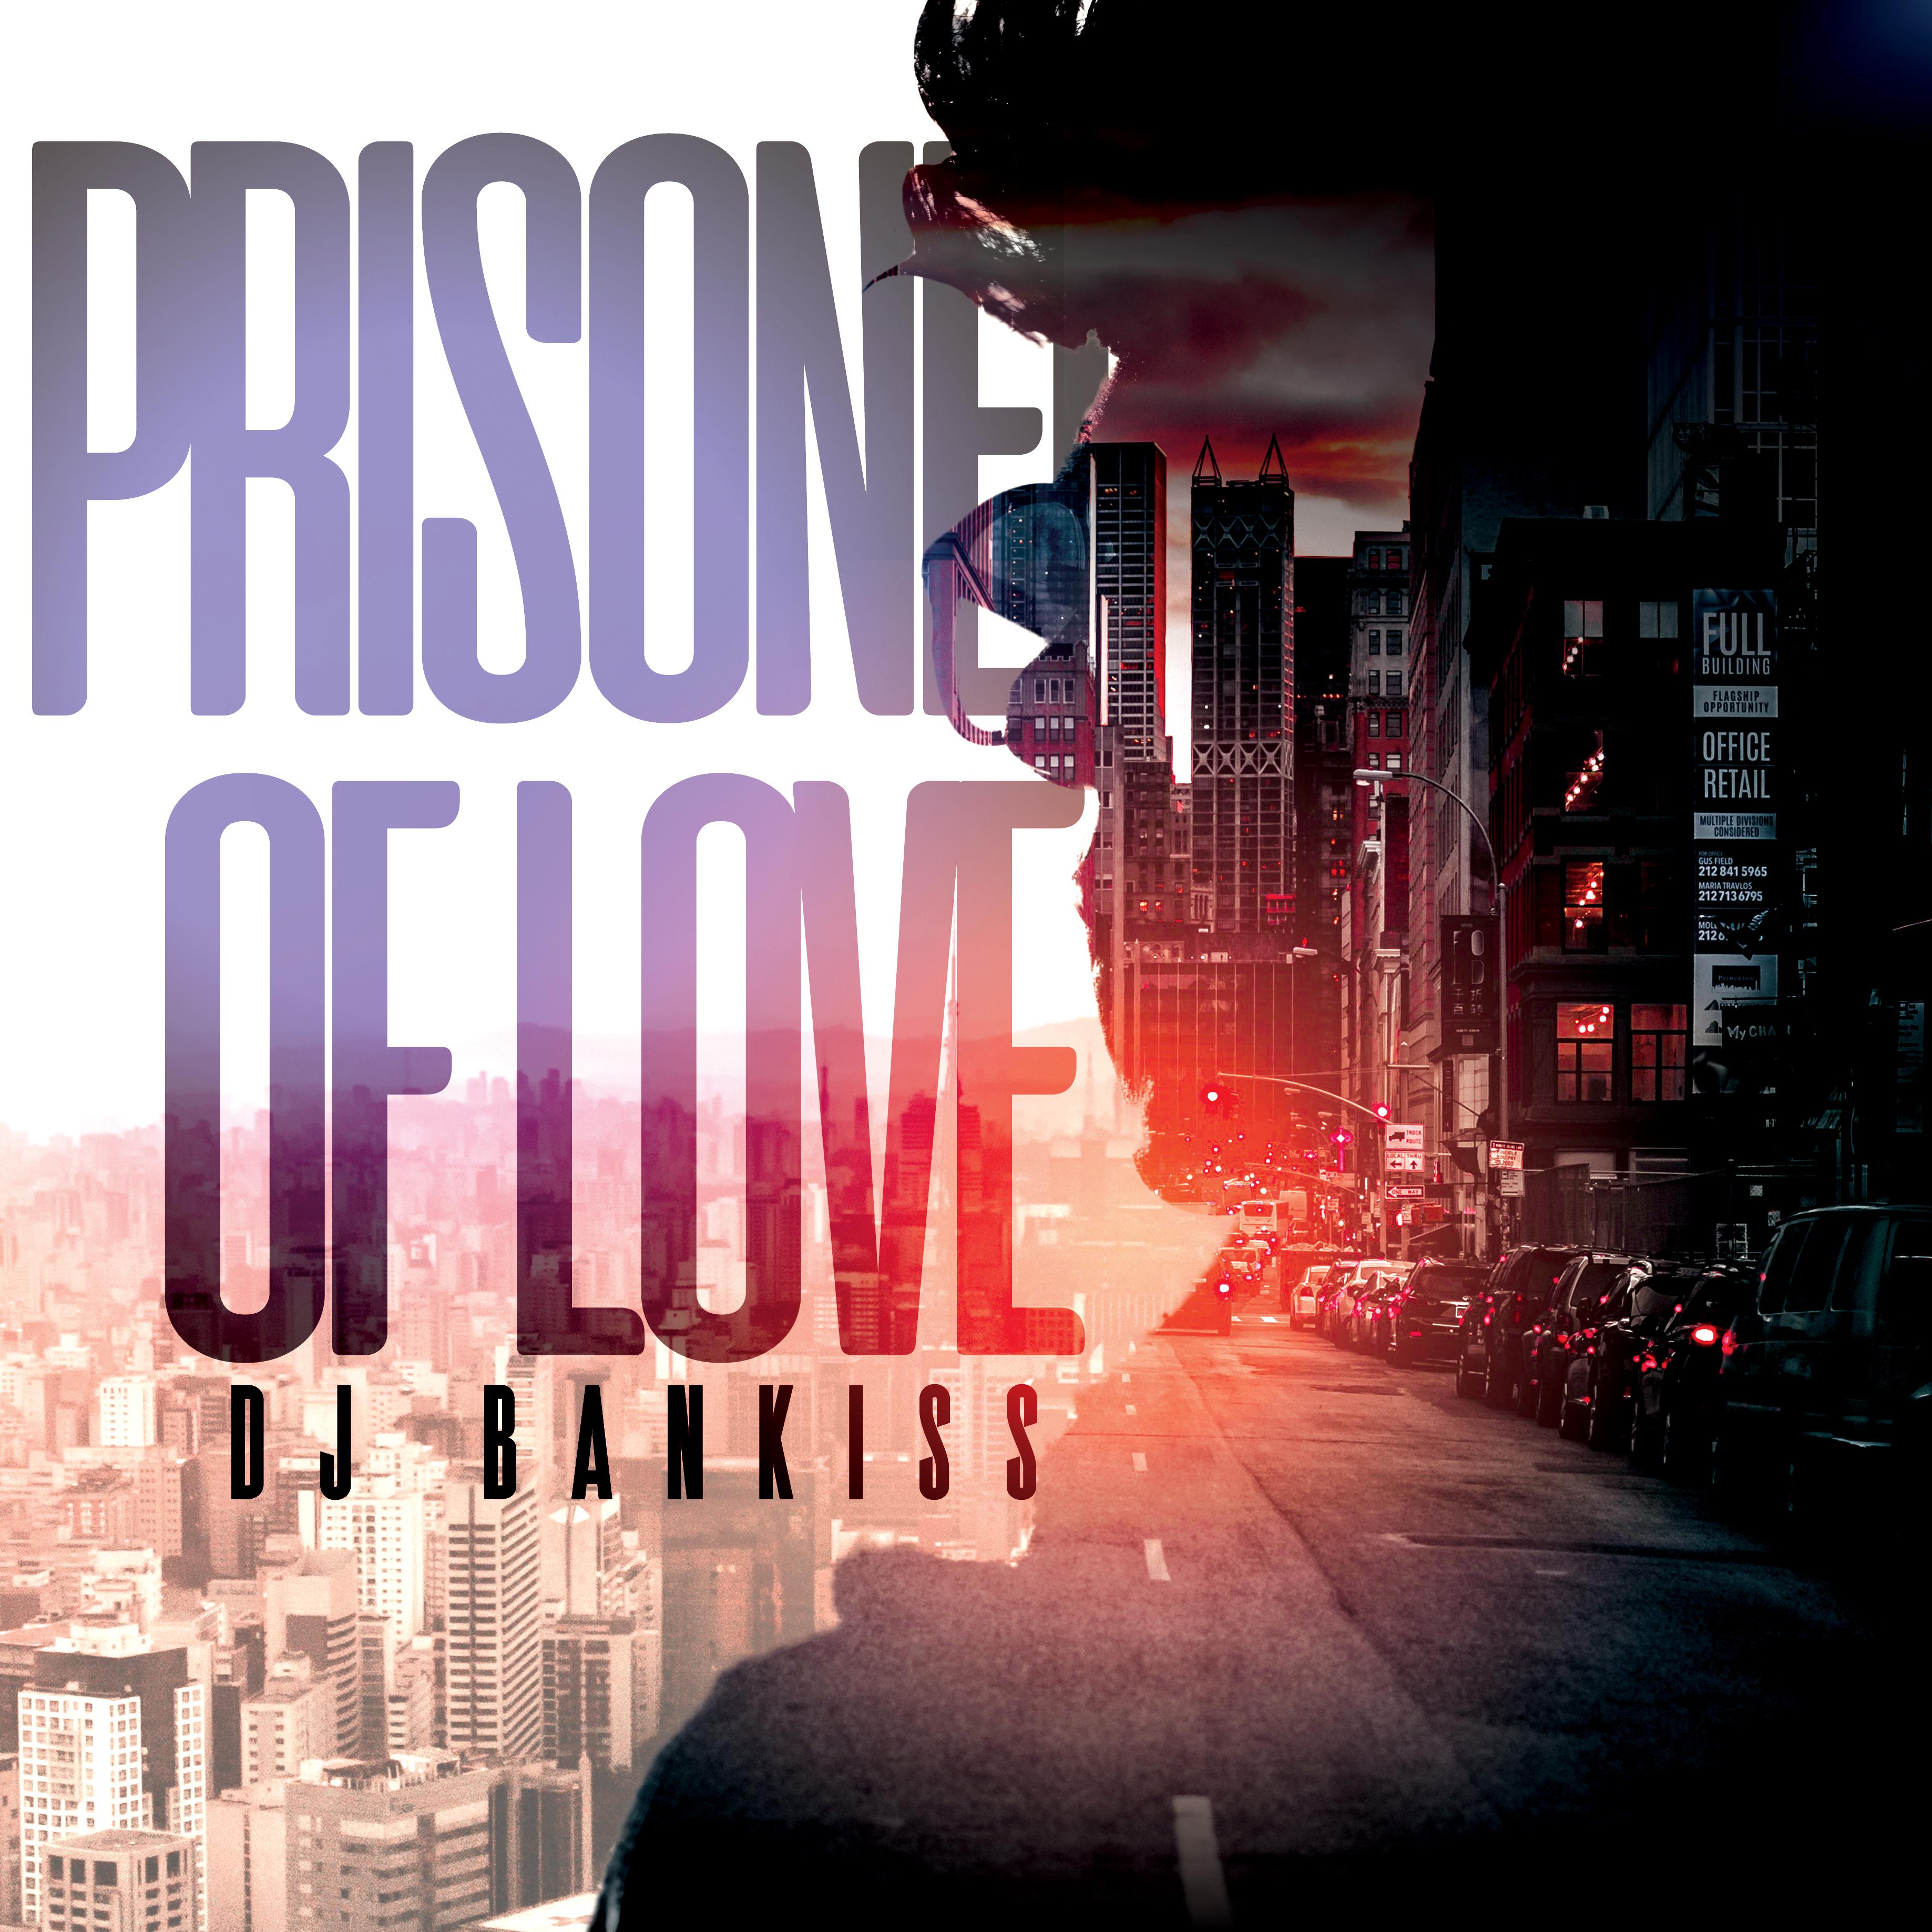 Постер альбома Prisoner of Love